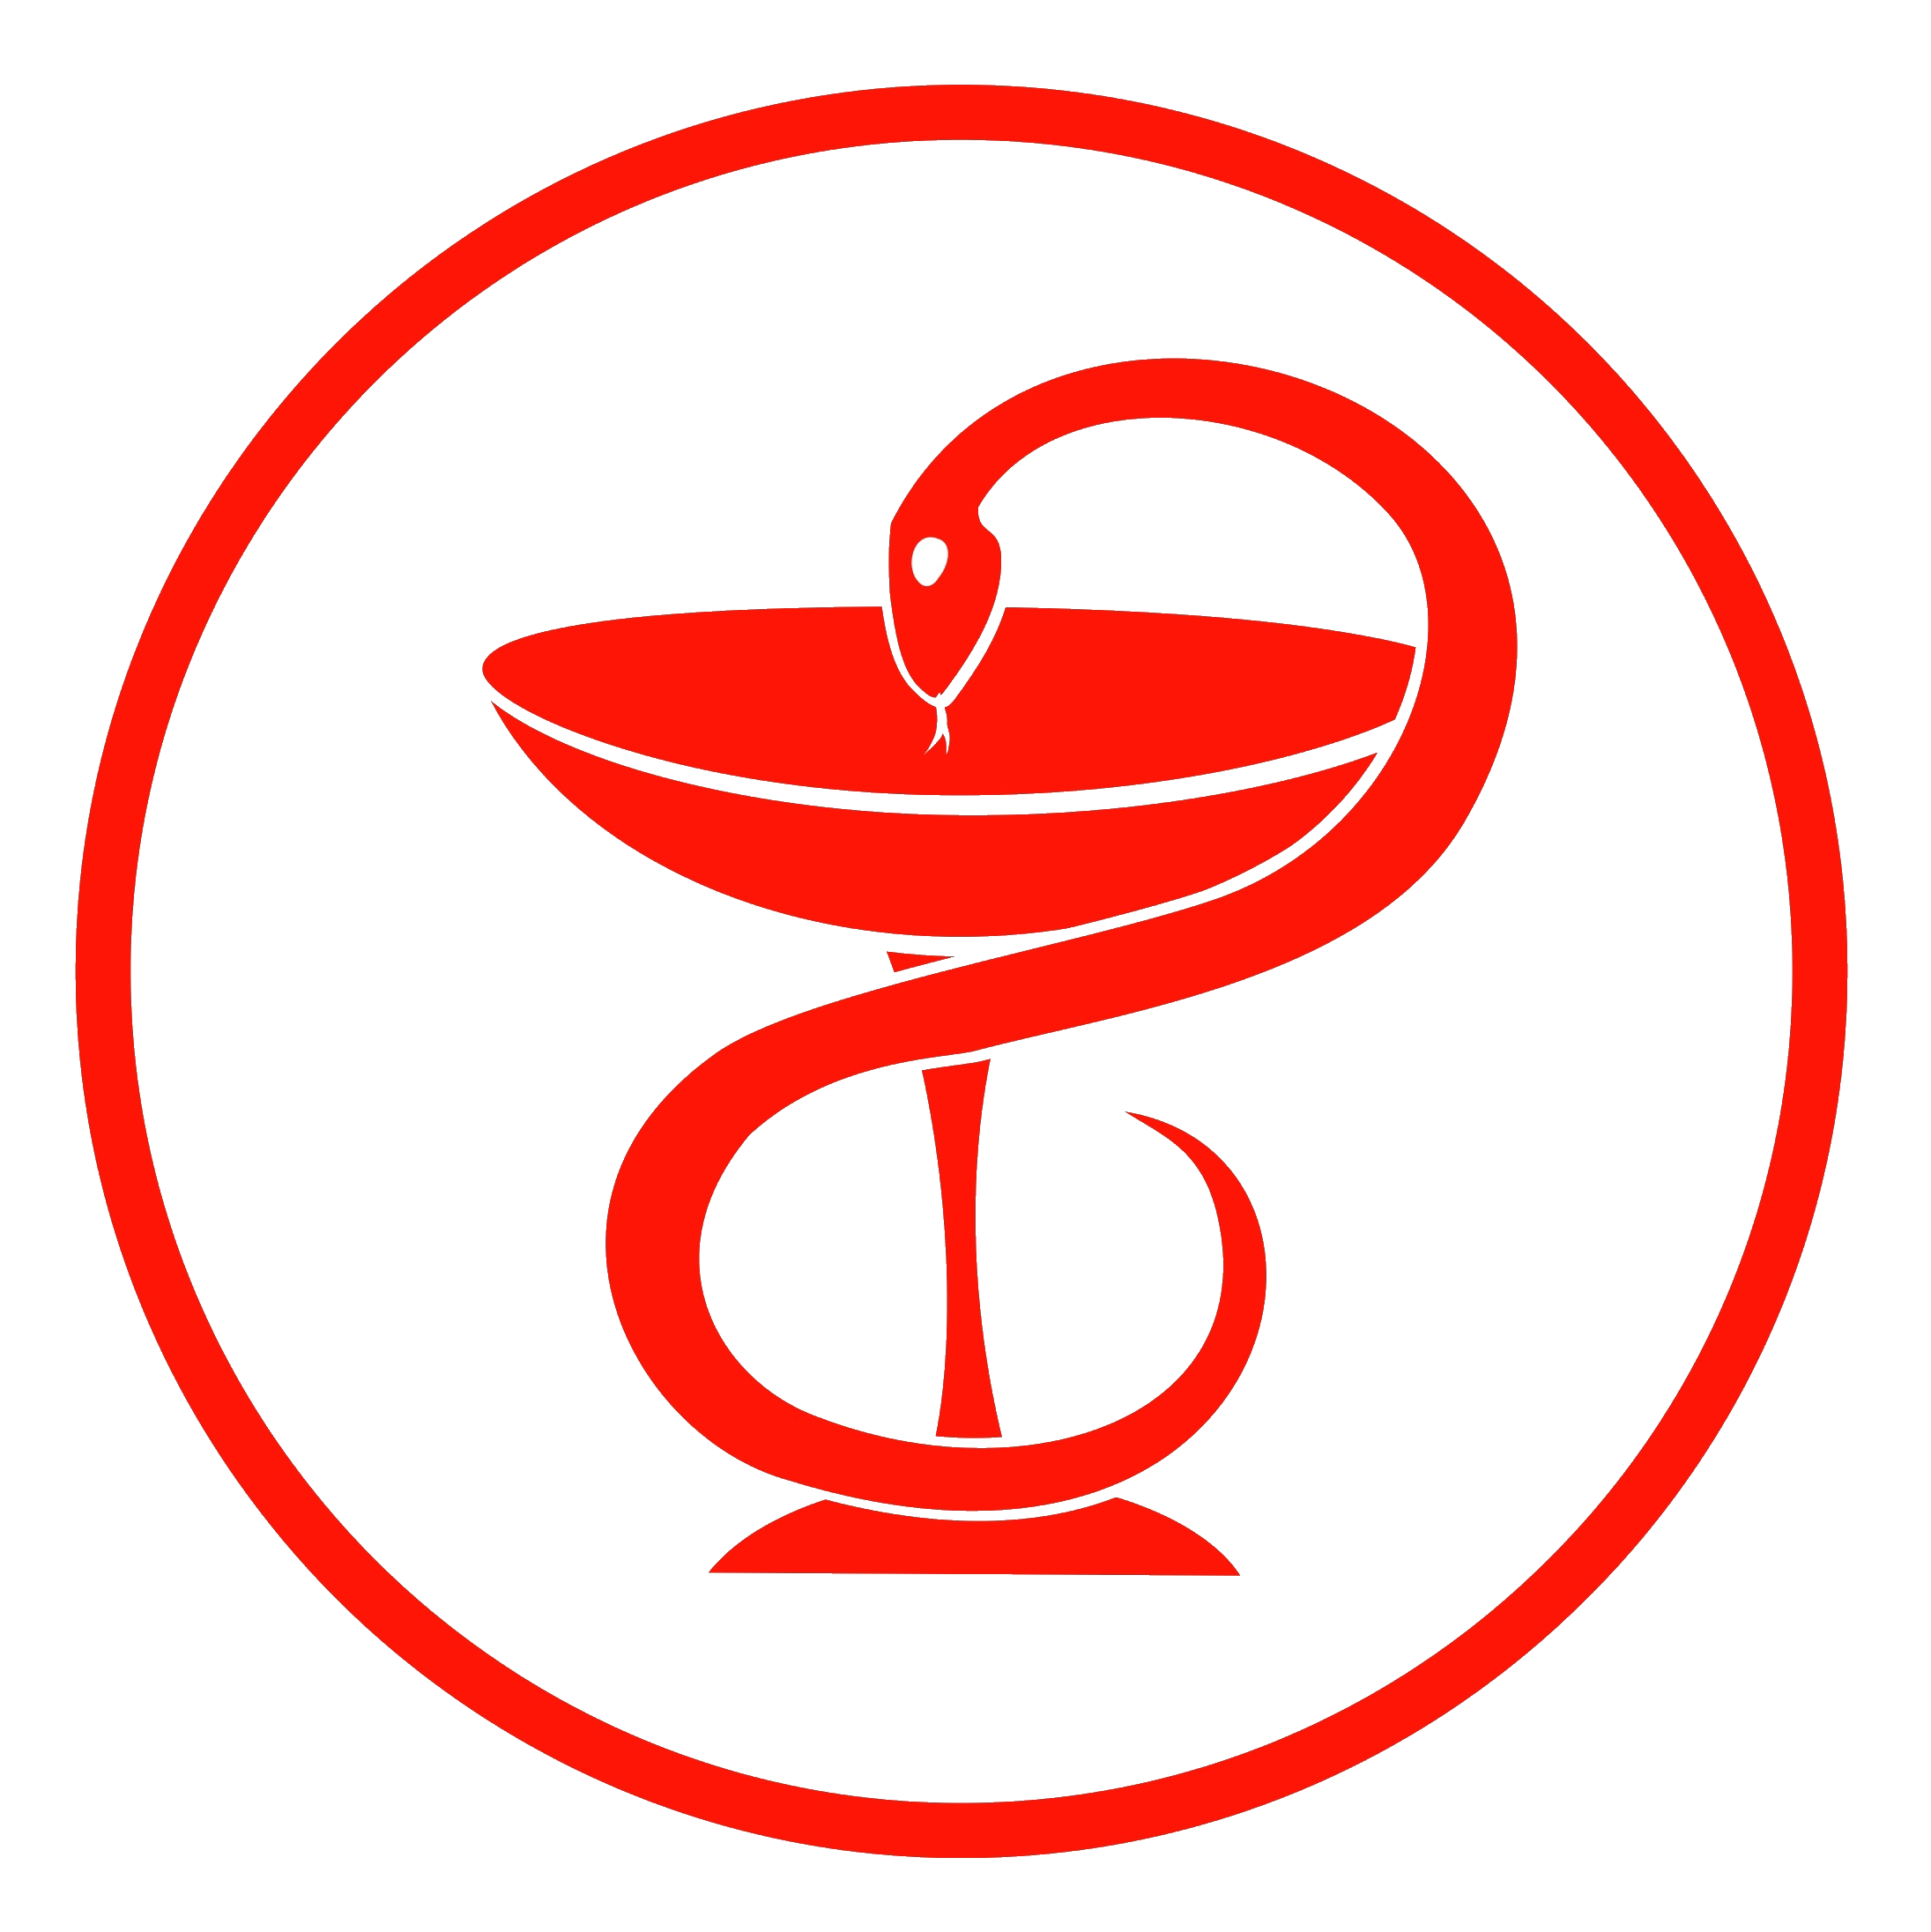 Медицина символ. Медицинская эмблема. Символ медицины. Логотип медицины. Чаша со змеей.